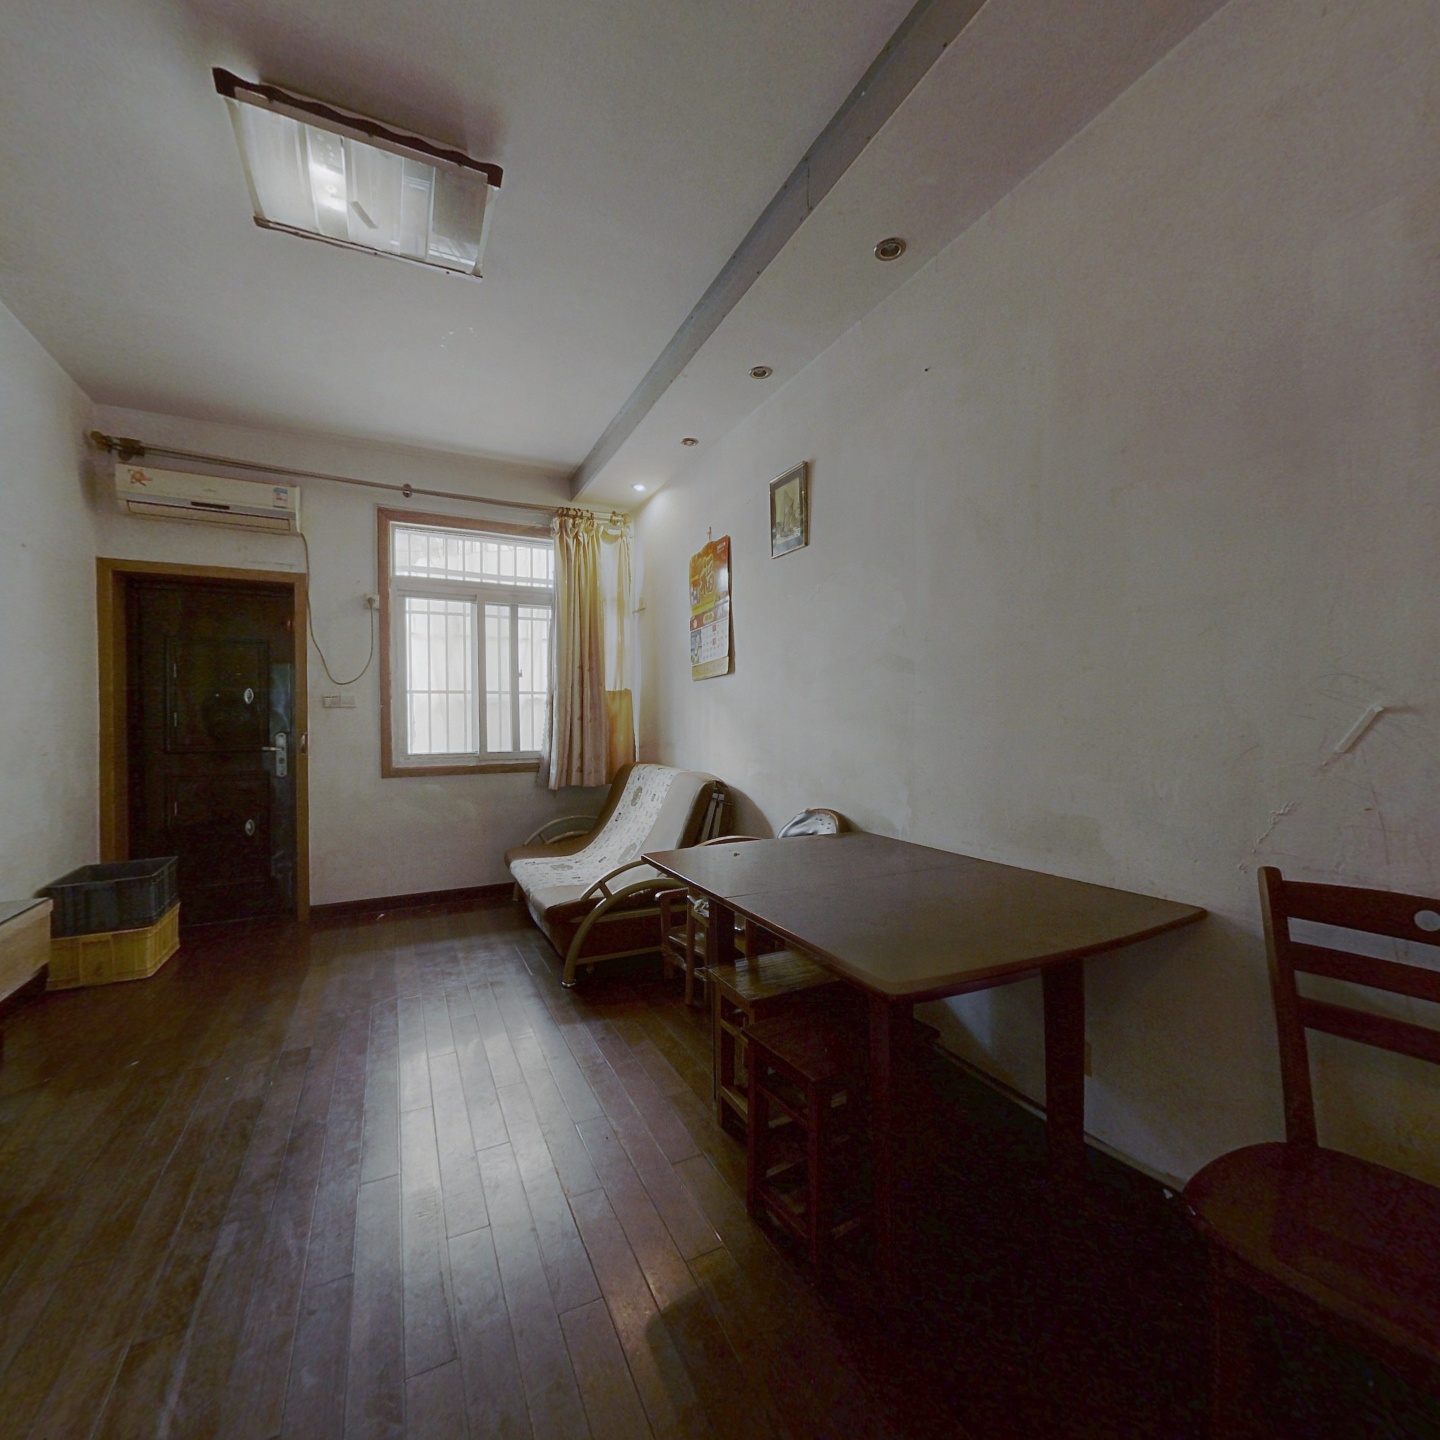 峨嵋新村 2室1厅 有露台 2层半 中科院房改房 有小区